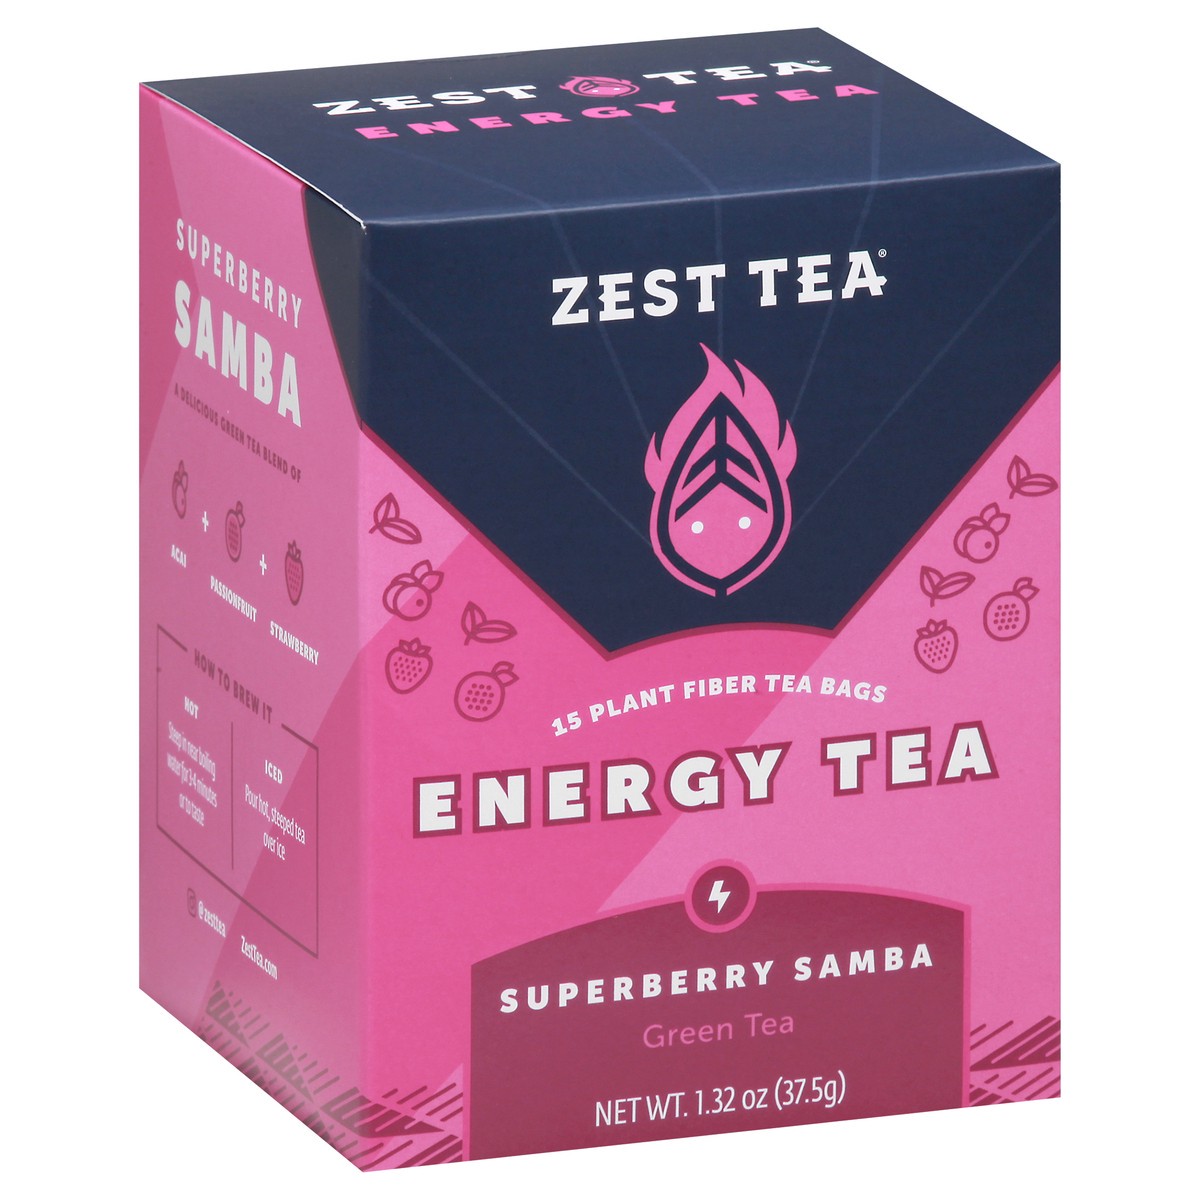 slide 2 of 9, Zest Tea Tea Bags Energy Superberry Samba Green Tea 15 ea, 15 ct